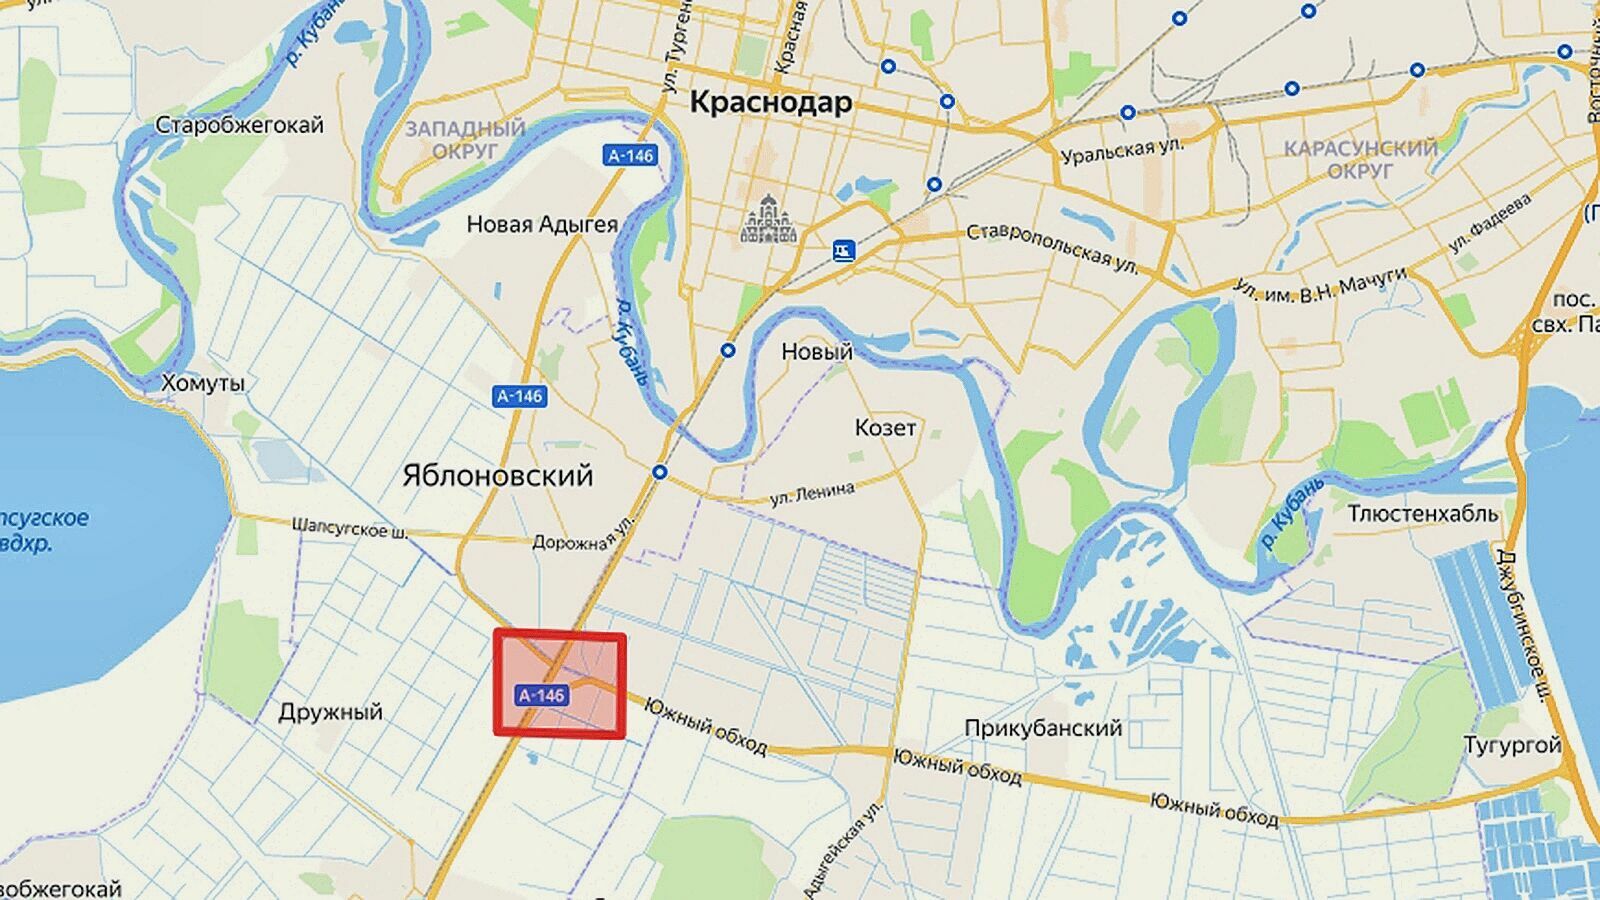 Новая развязка появится в районе Яблоновского и Южного обхода Краснодара